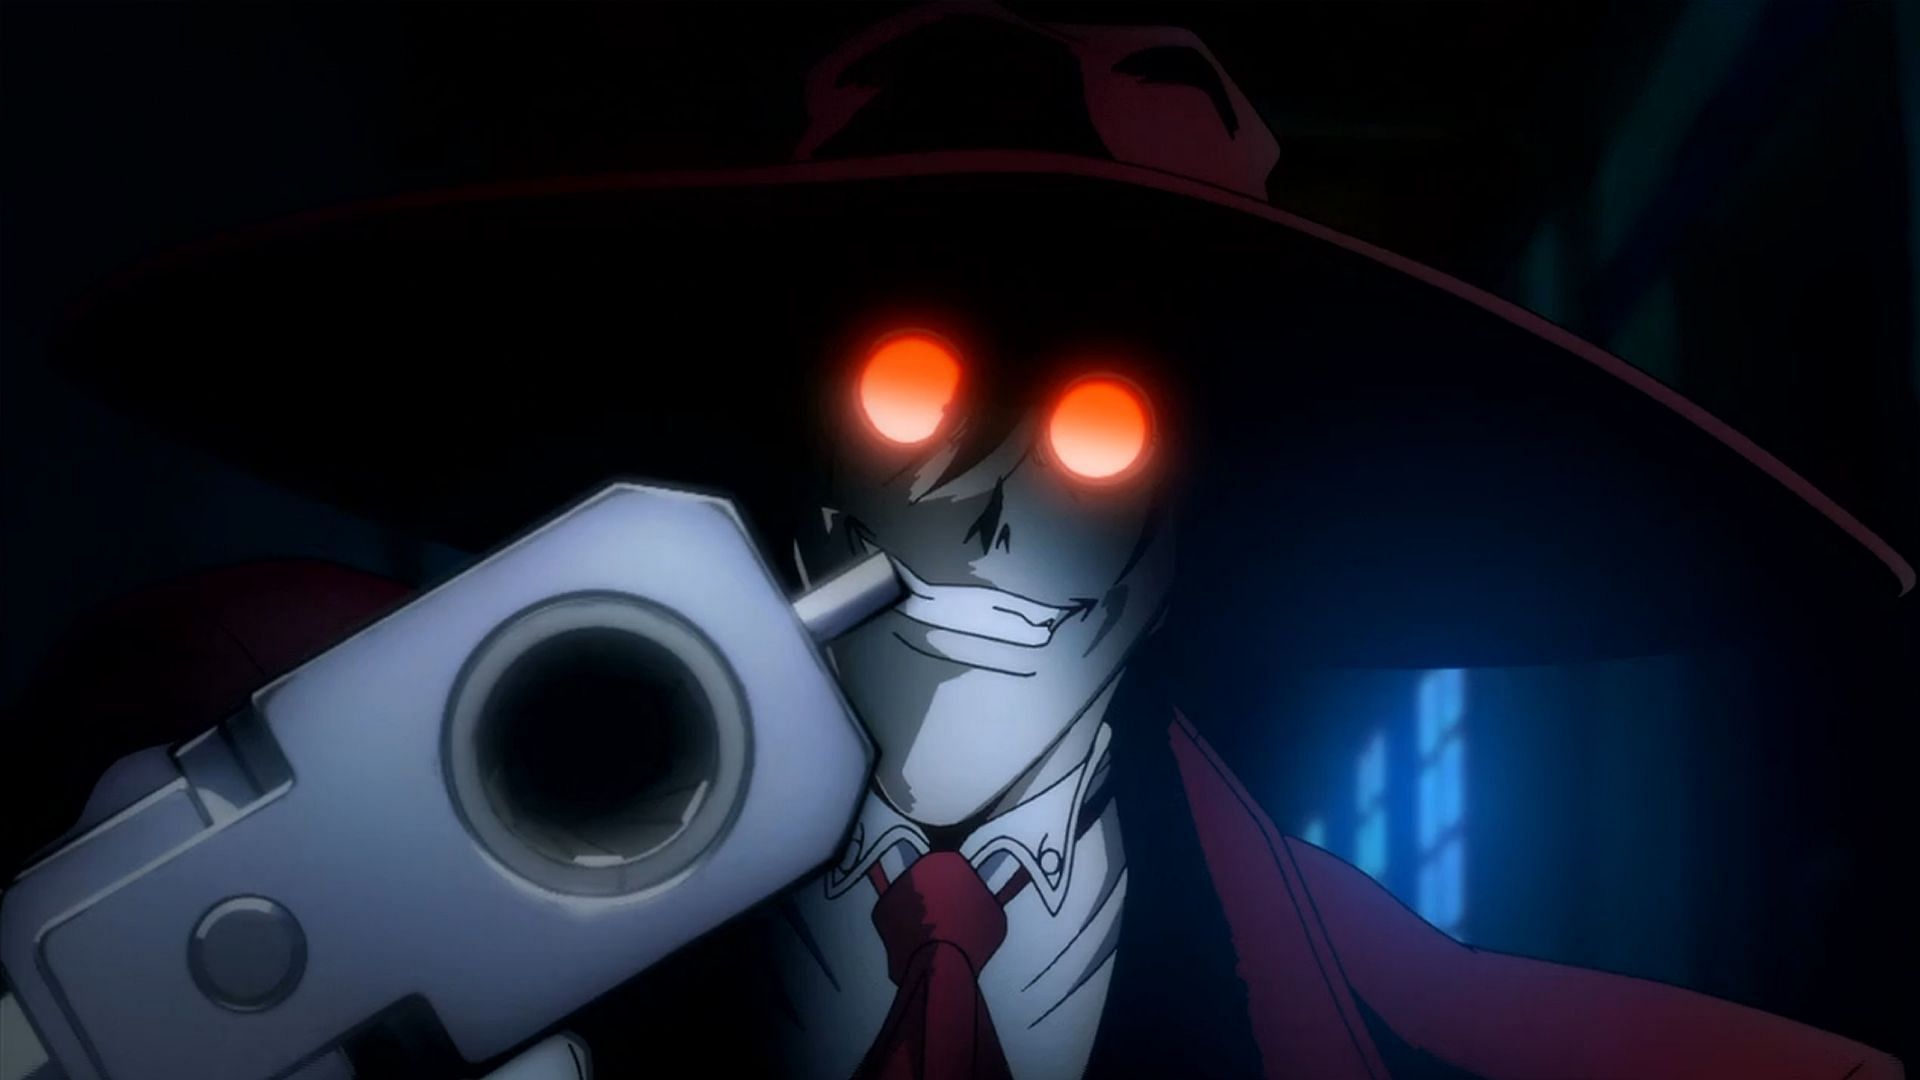 Alucard taking aim (Image via Funimation)